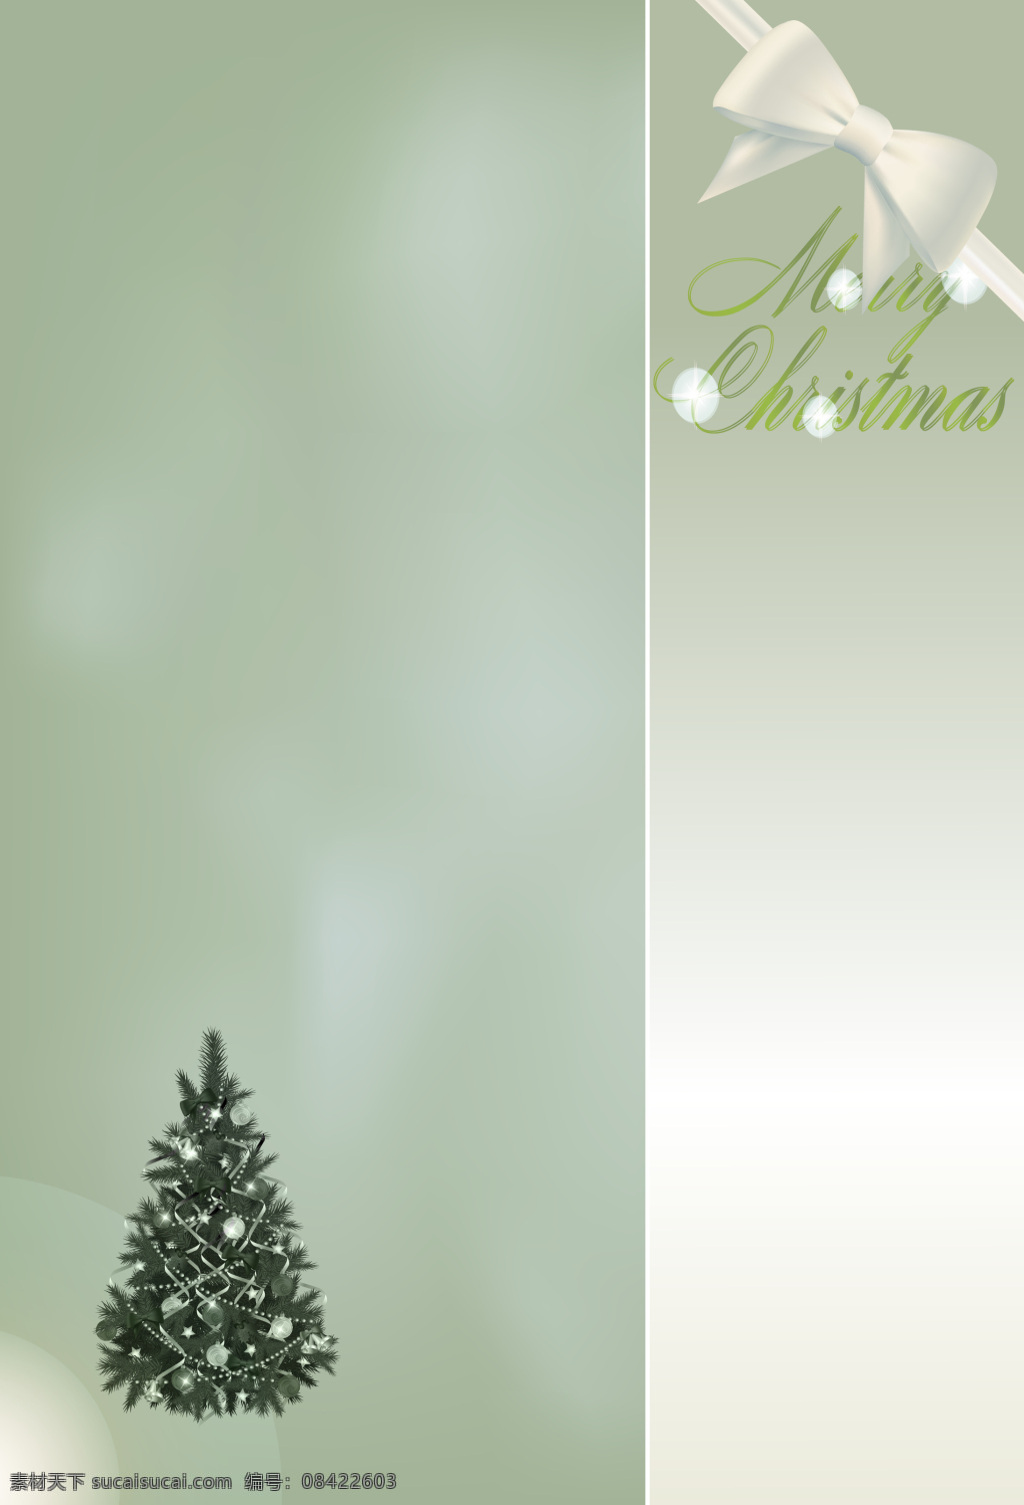 华丽 银色 圣诞树 装扮 海报 背景 节日 矢量 幸福 文艺 小清新 简约